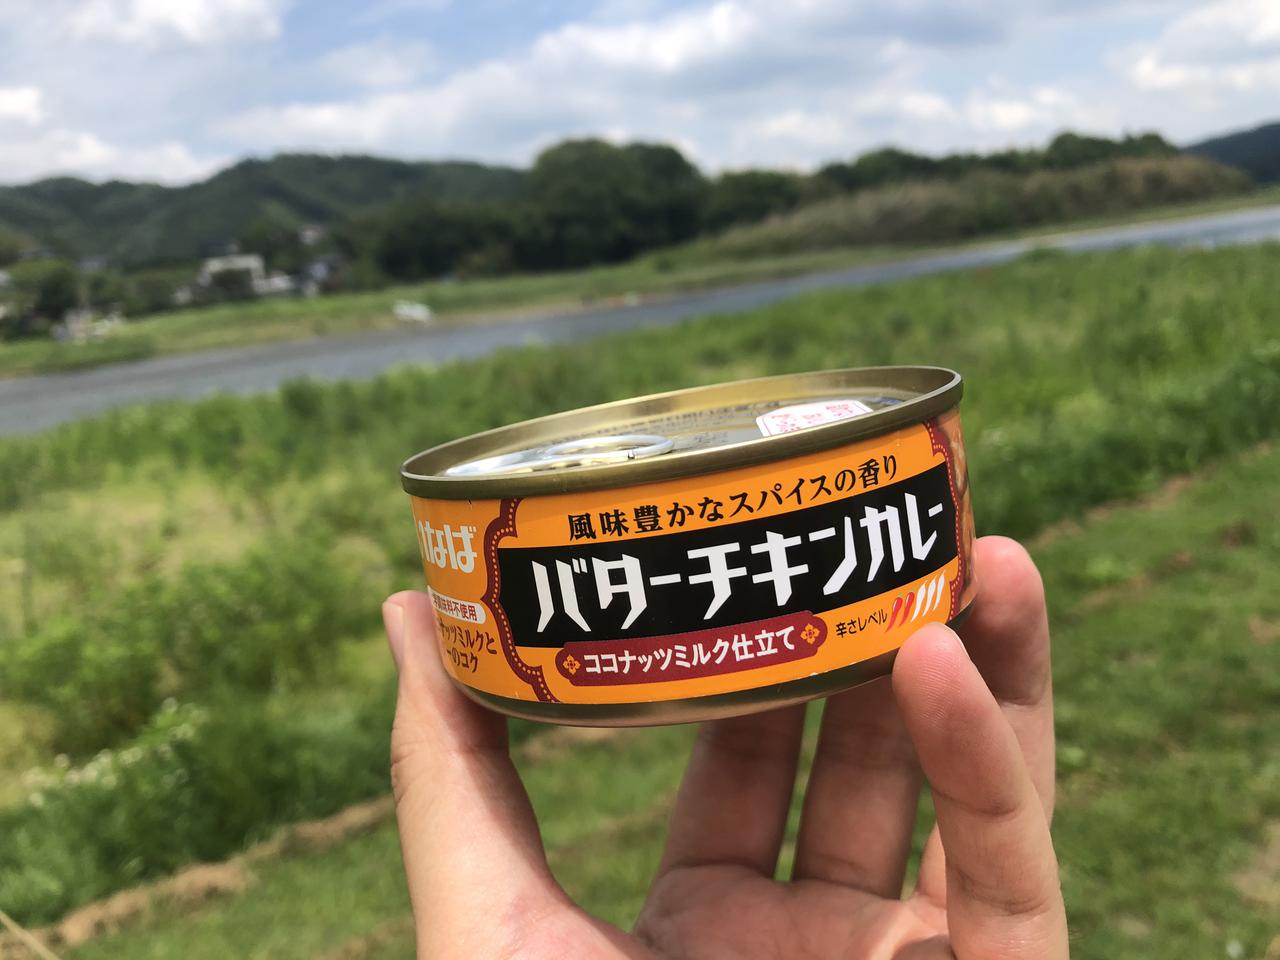 いなばの 缶詰カレー がすごい お手軽 種類豊富でキャンプ飯が楽しくなる お役立ちキャンプ情報 21年06月17日 日本気象協会 Tenki Jp